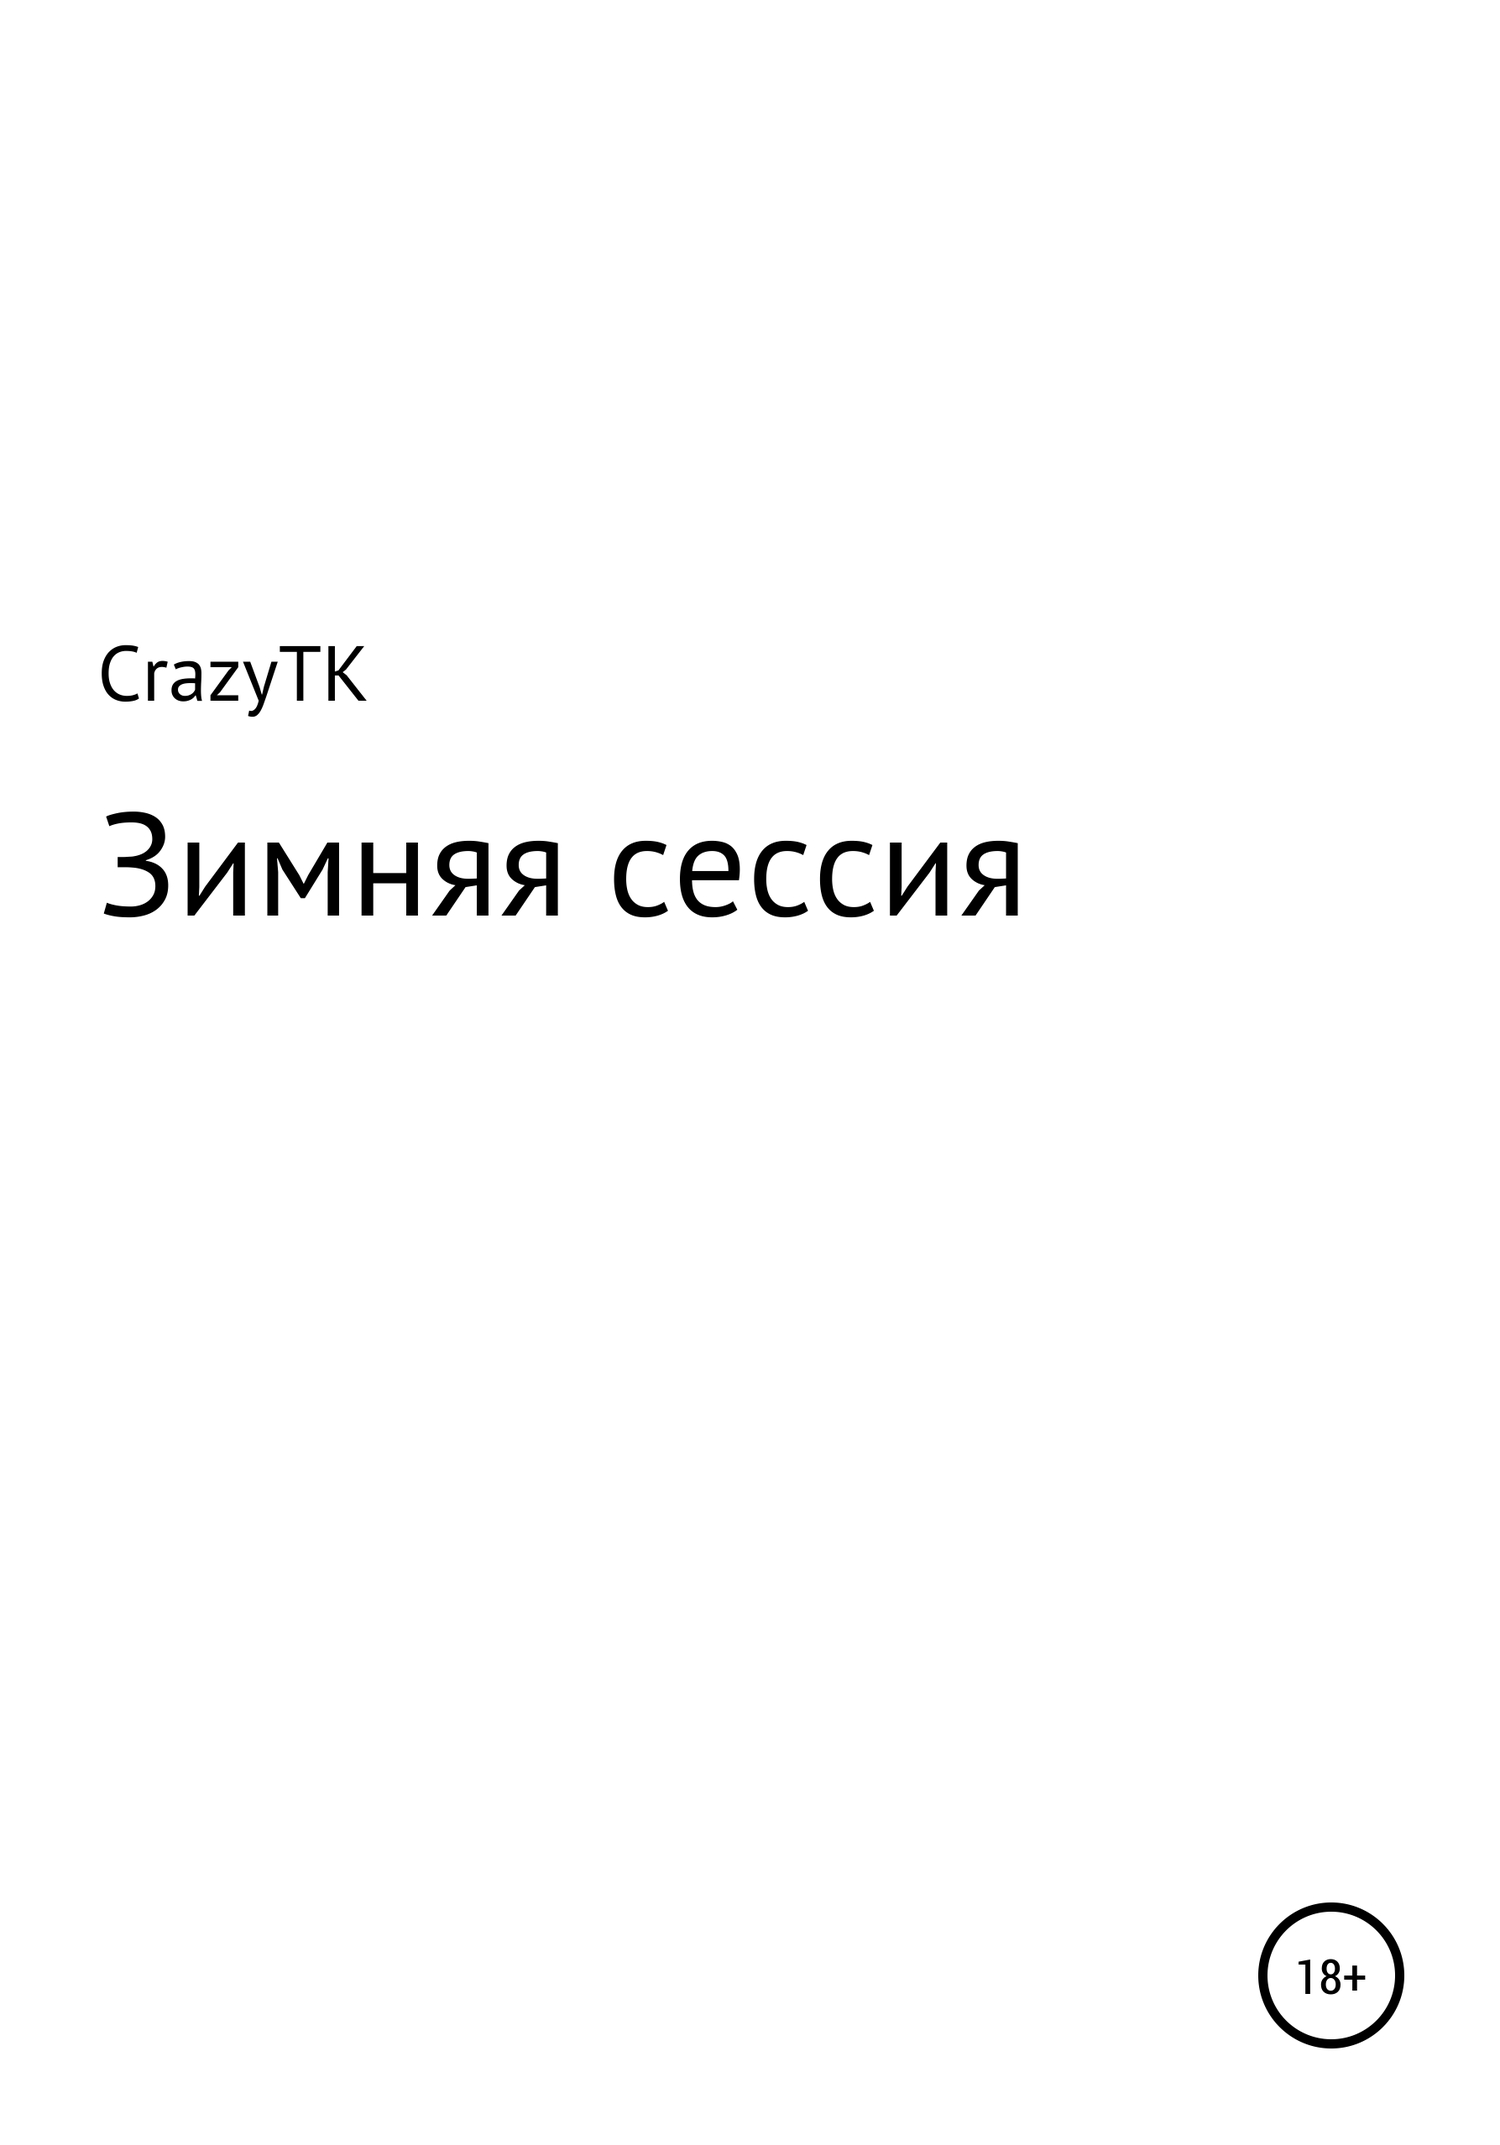 Зимняя сессия - CrazyTK